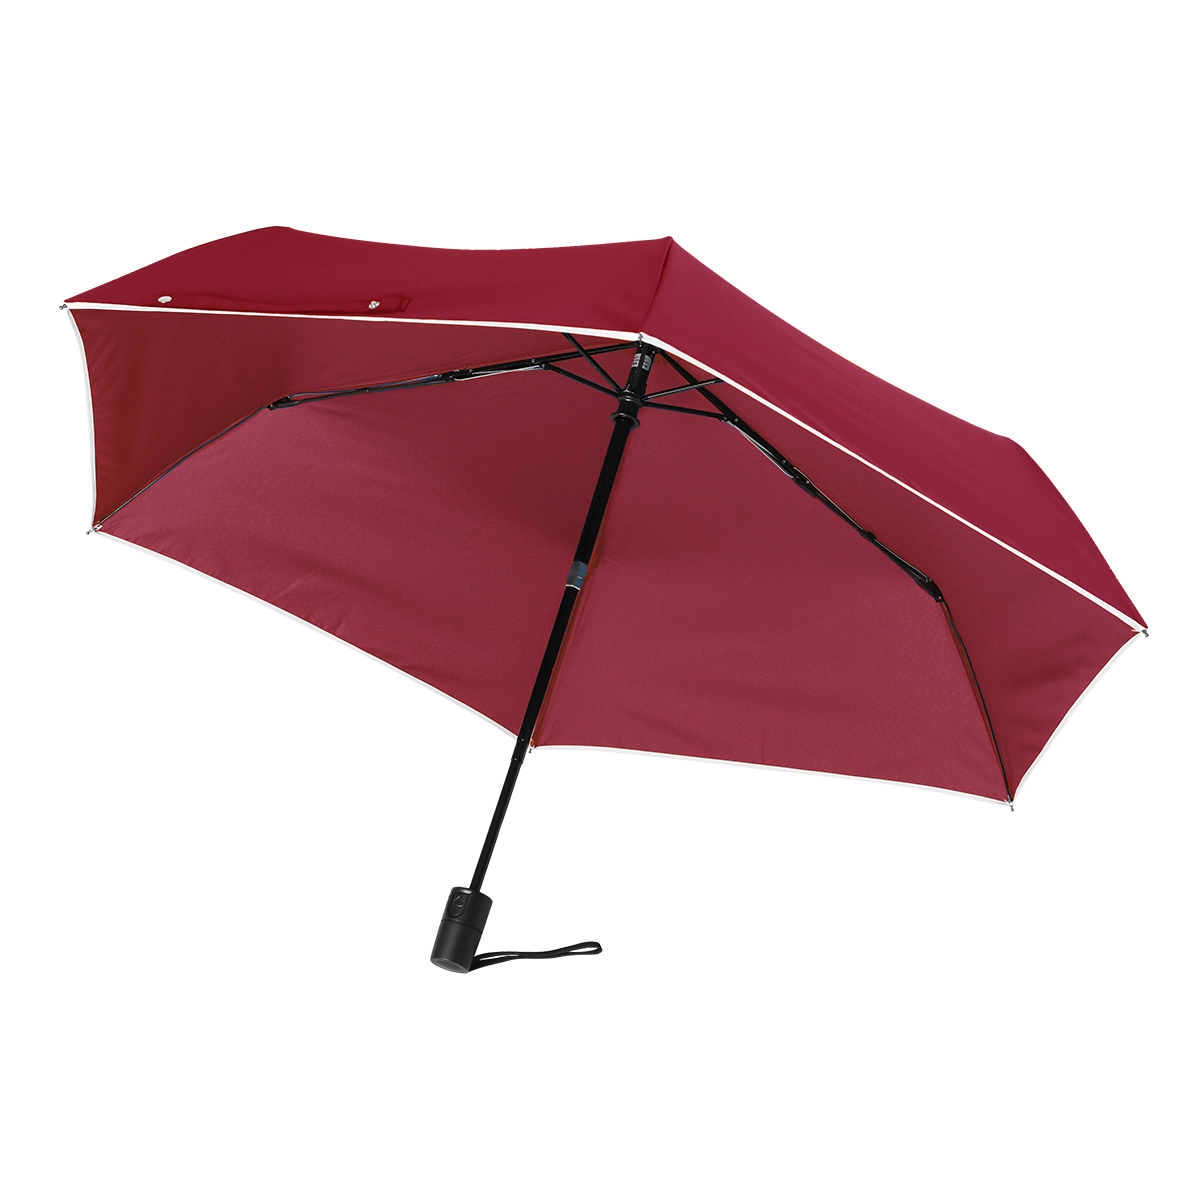 折りたたみ傘 レディース 雨傘 ワンタッチ自動開閉 軽量 梅雨対策 メンズ 大きい 5級撥水 折り畳み傘 丈夫 風に強い プレゼント